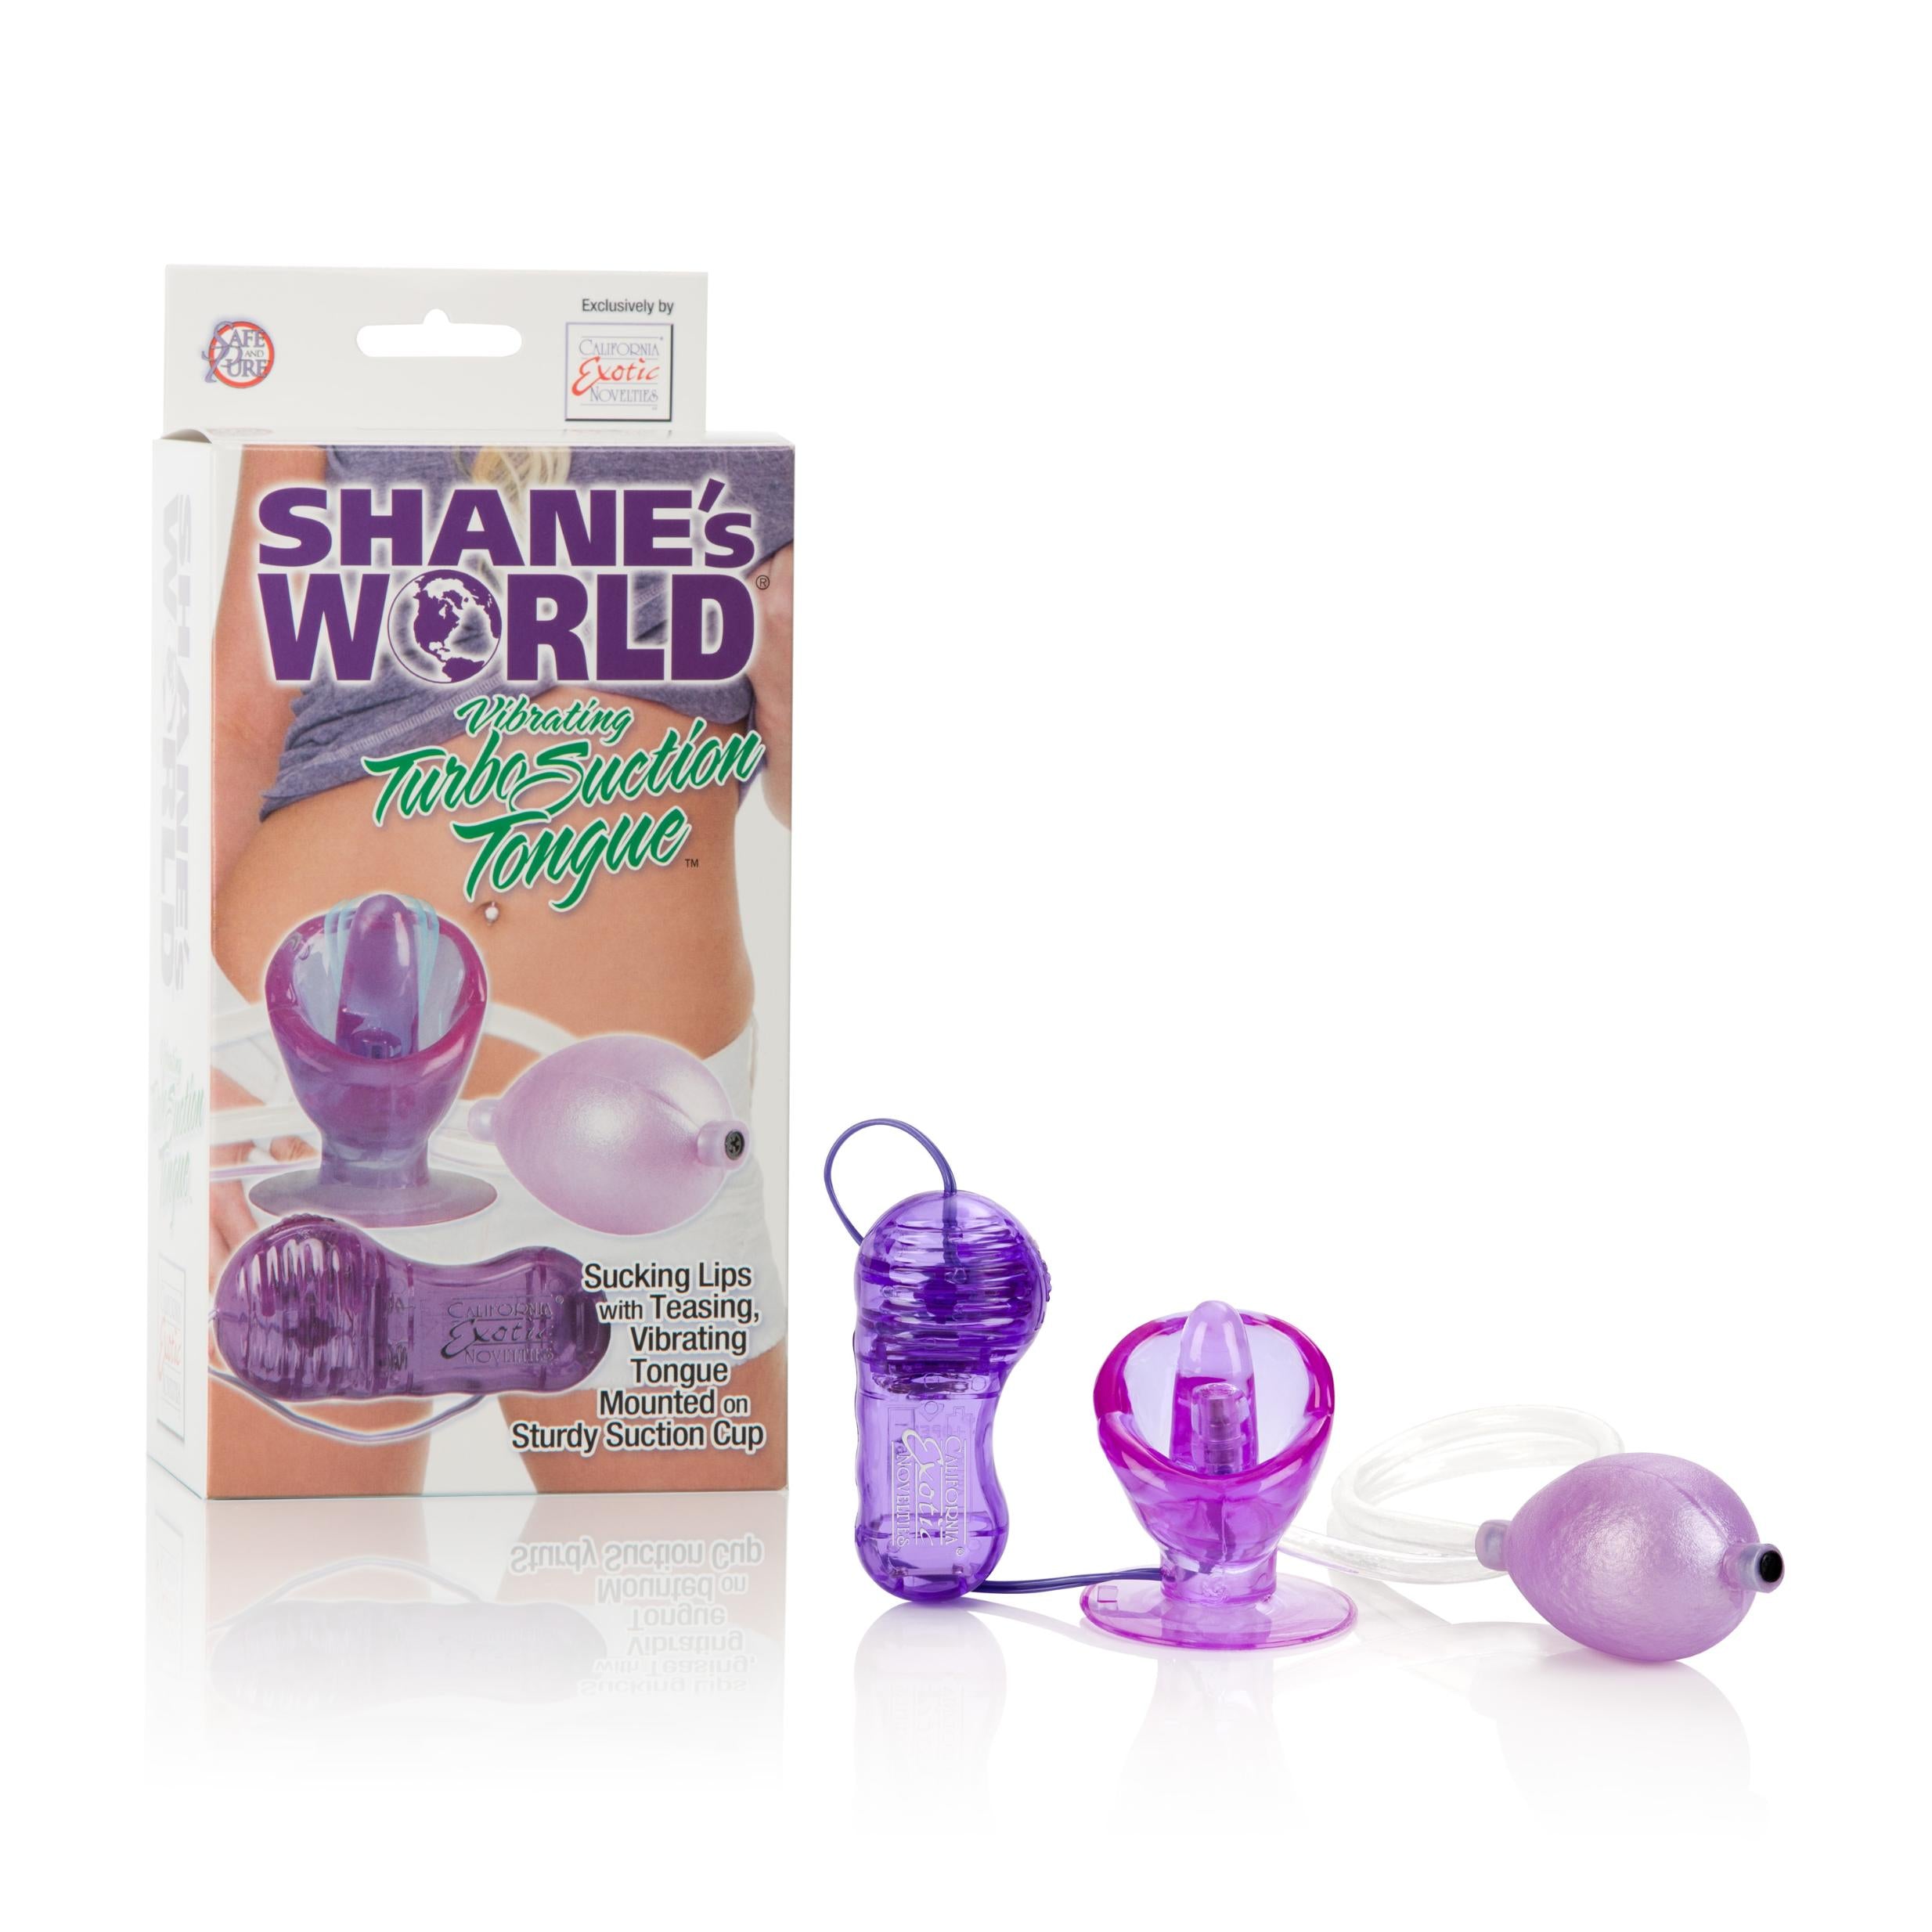 Shanes World Vibrating Turbo Suction Tongue Stimulator